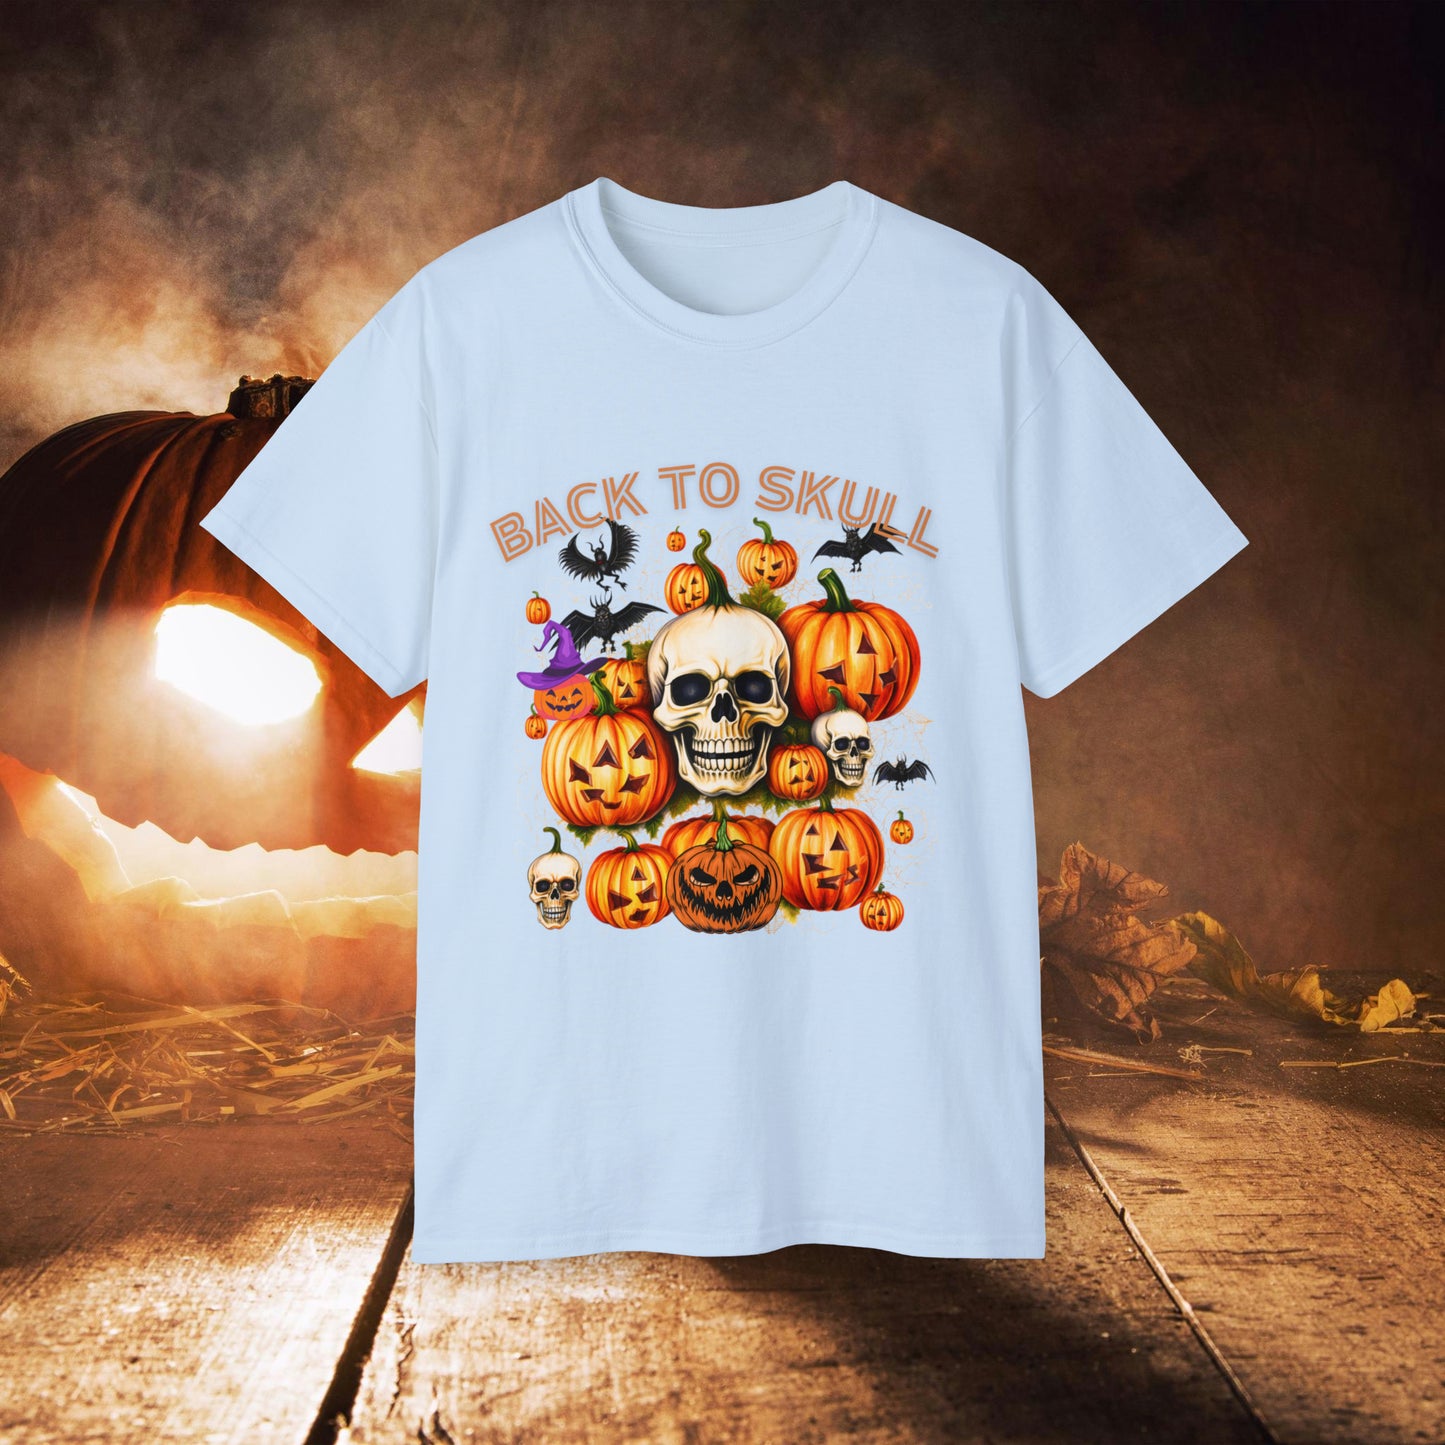 Back to Skull Halloween Tee | Back To Skull T-Shirt Light Blue S 